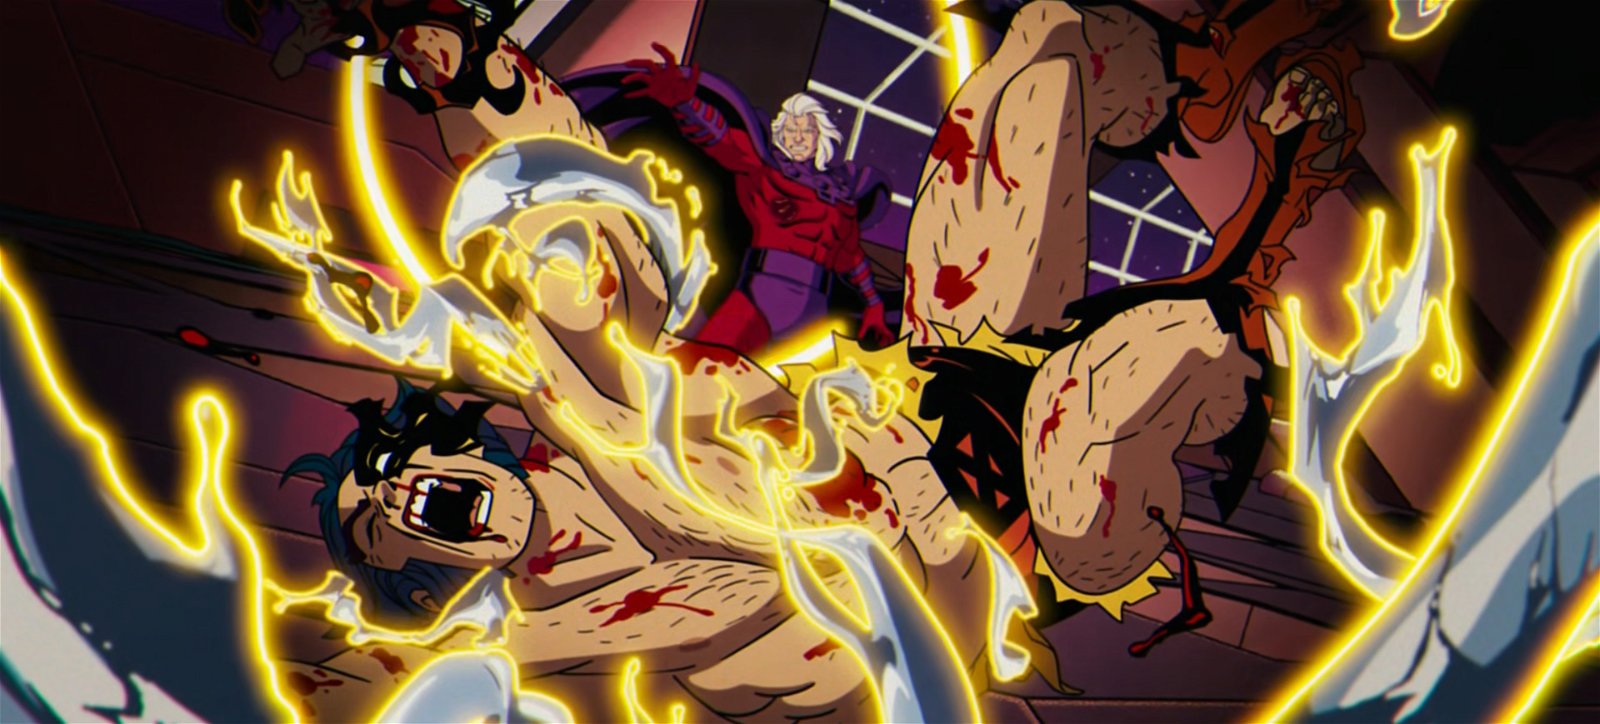 X-Men '97 - Magneto arrache l'adamantium de Wolverine